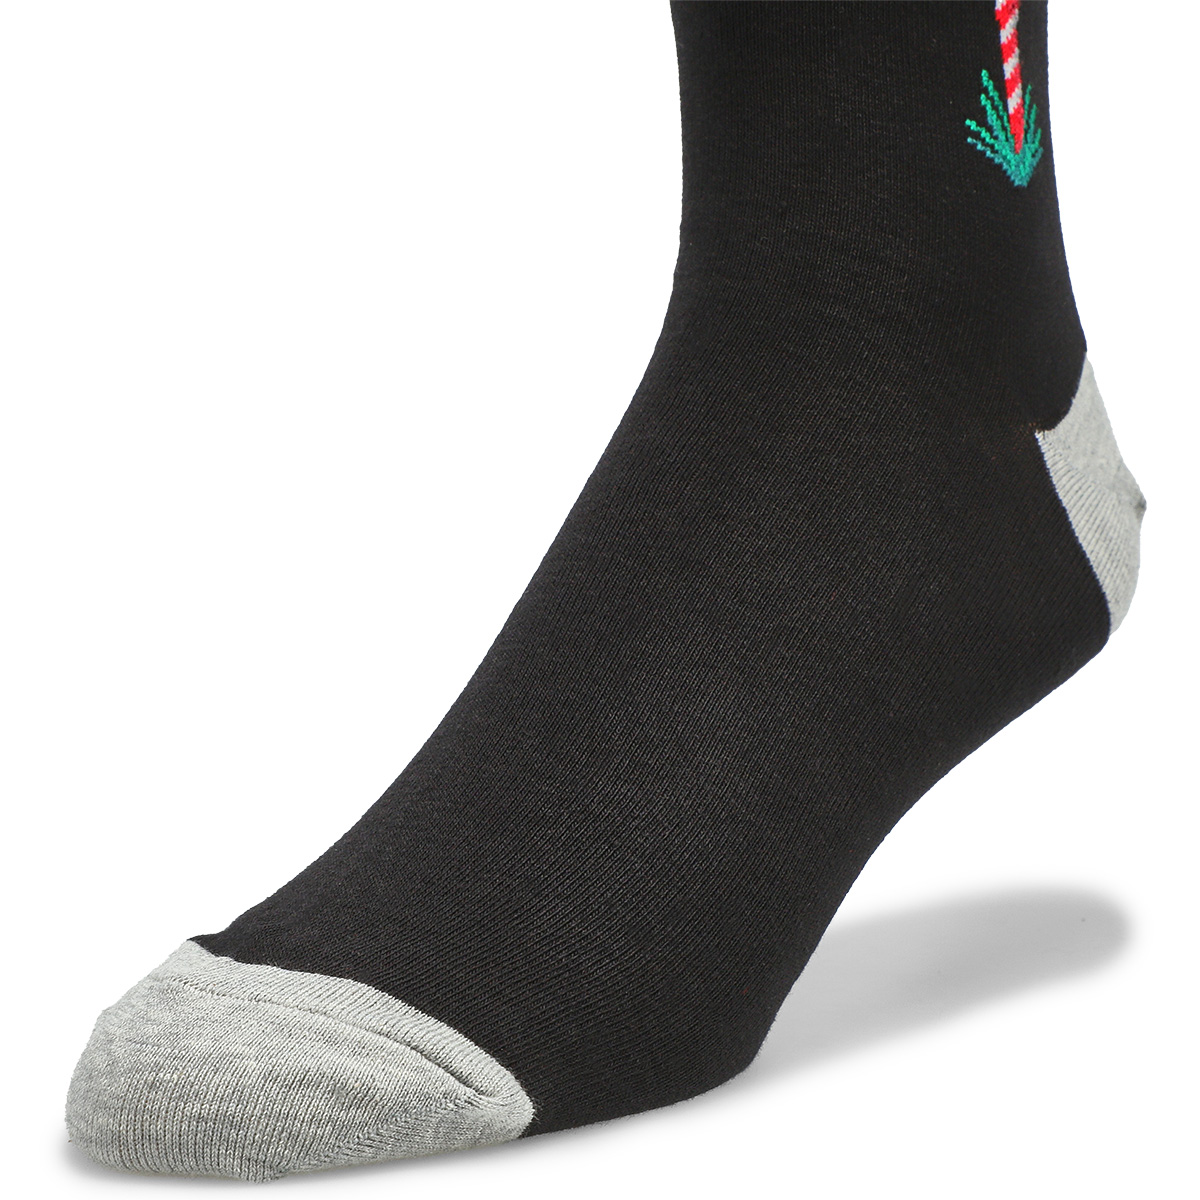 Men's Christmas Tee Printed Socks